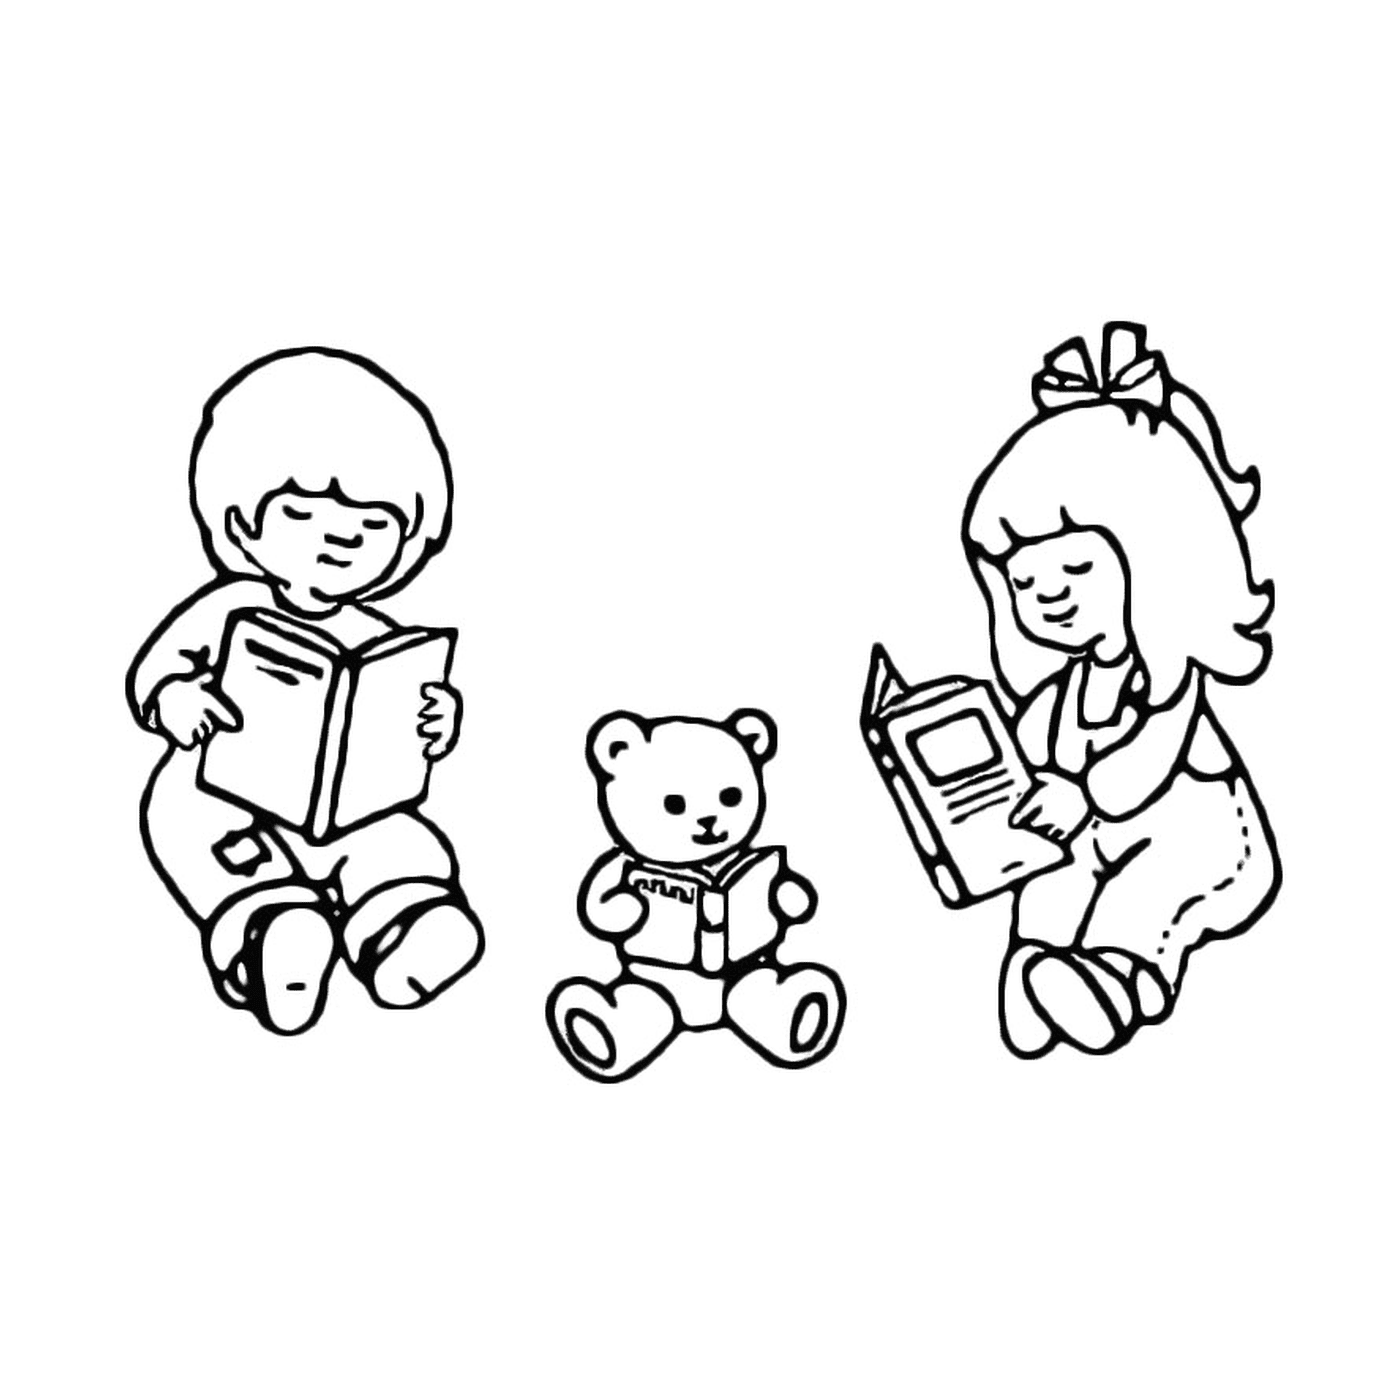  ثلاثة أطفال يقرأون كتاباً مع دب 